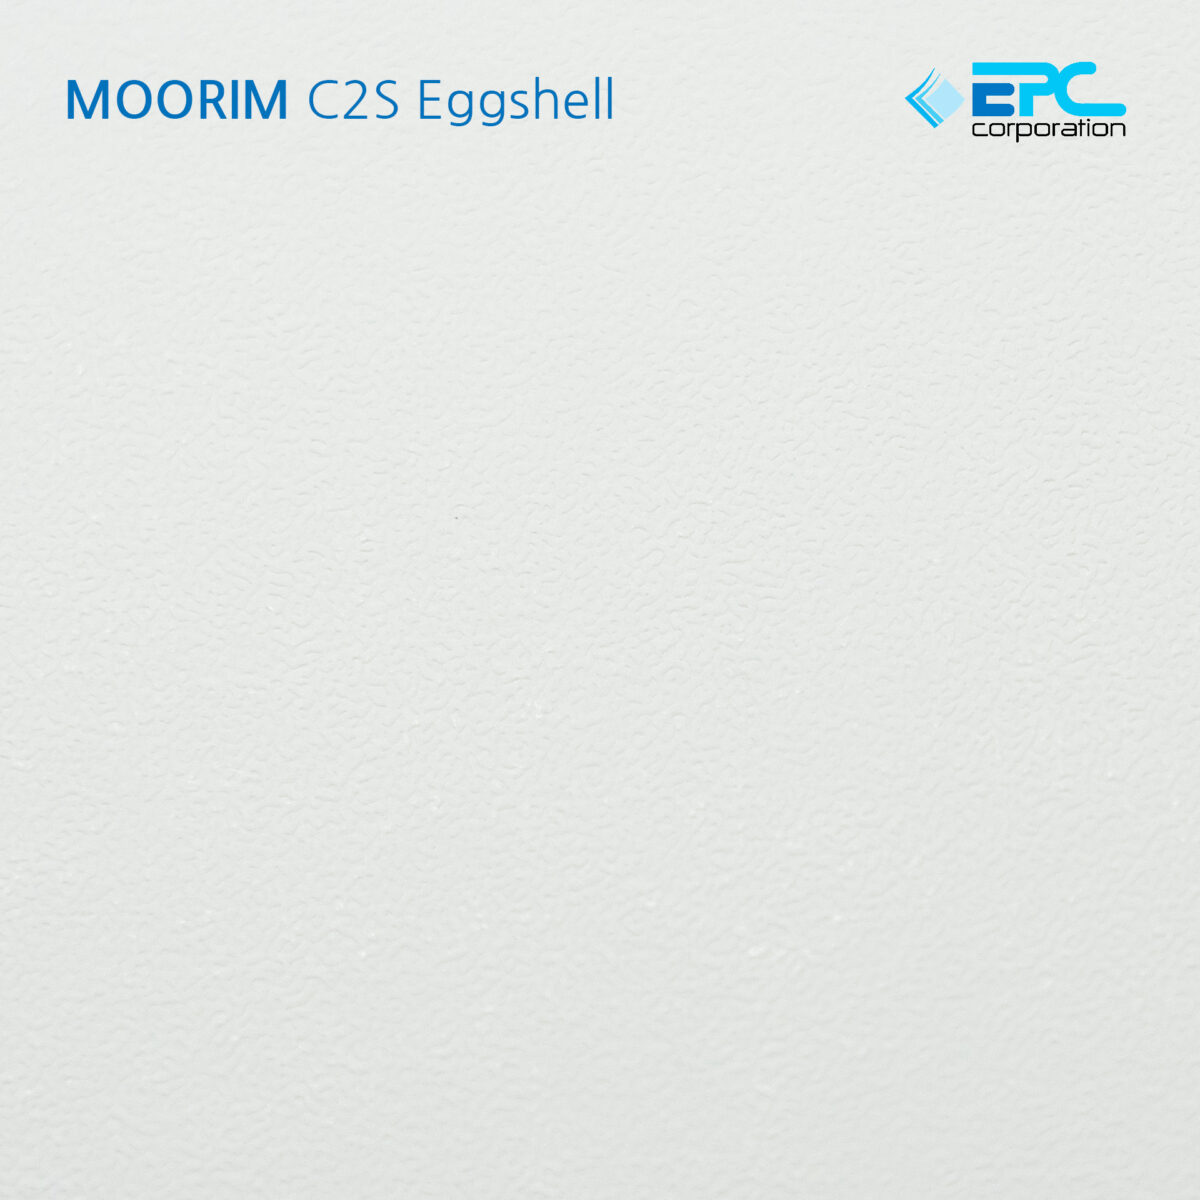 Moorim C2S Eggshell กระดาษอัดลายเปลือกไข่ กระดาษเปลือกไข่ กระดาษอัดลาย กระดาษพิเศษ กระดาษมูริม